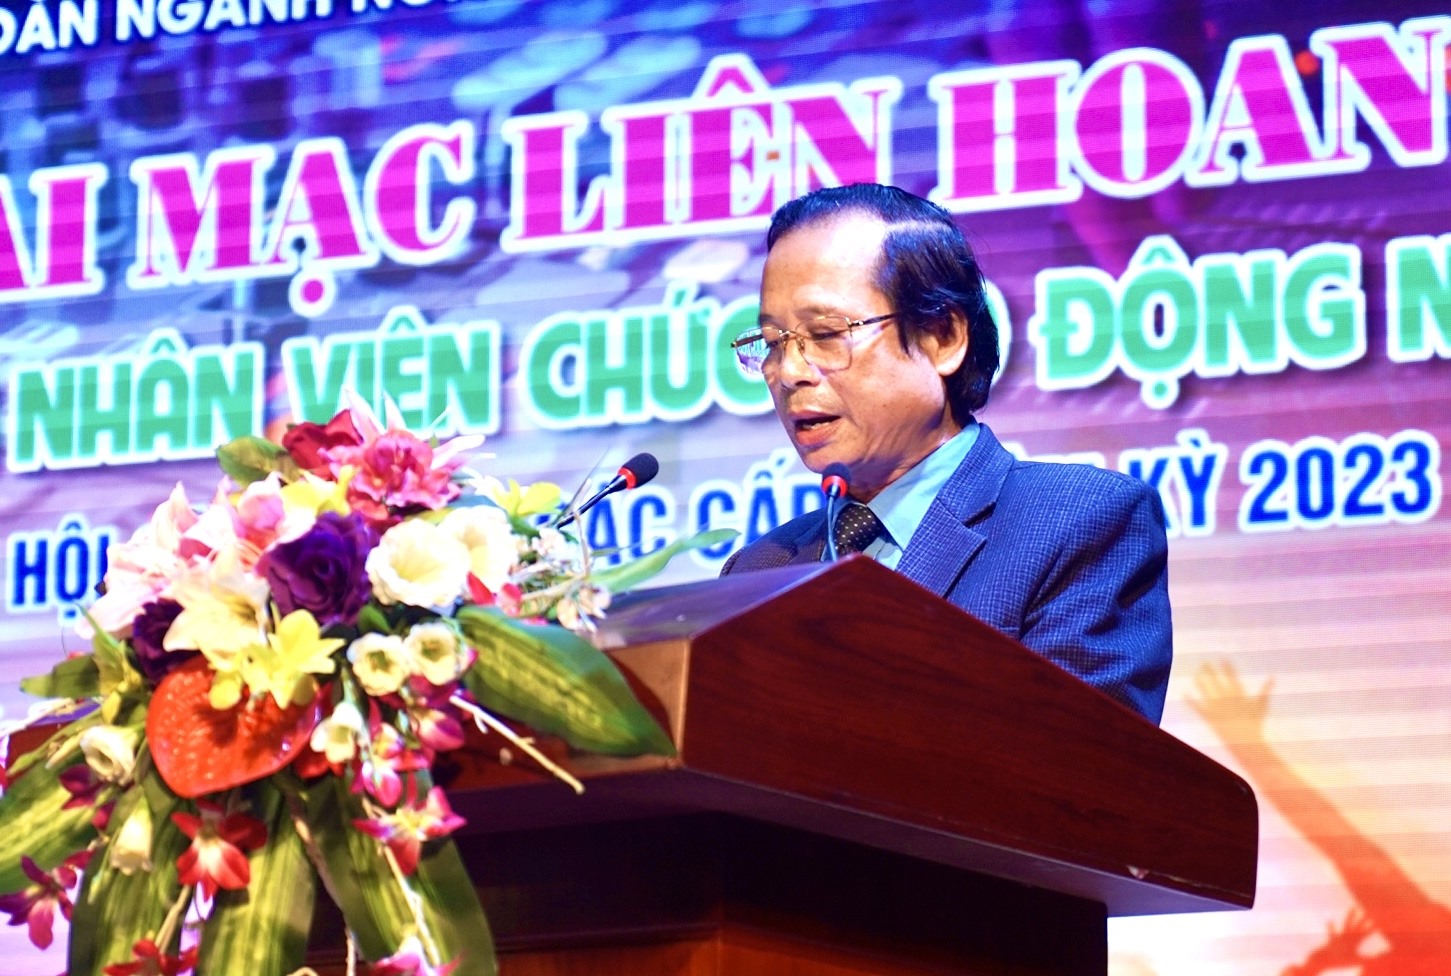 Đồng chí Phú Văn Lĩnh, Chủ tịch Công đoàn ngành Nông nghiệp và PTNT Nghệ An phát biểu tại chương khai mạc. Ảnh: Quỳnh Trang